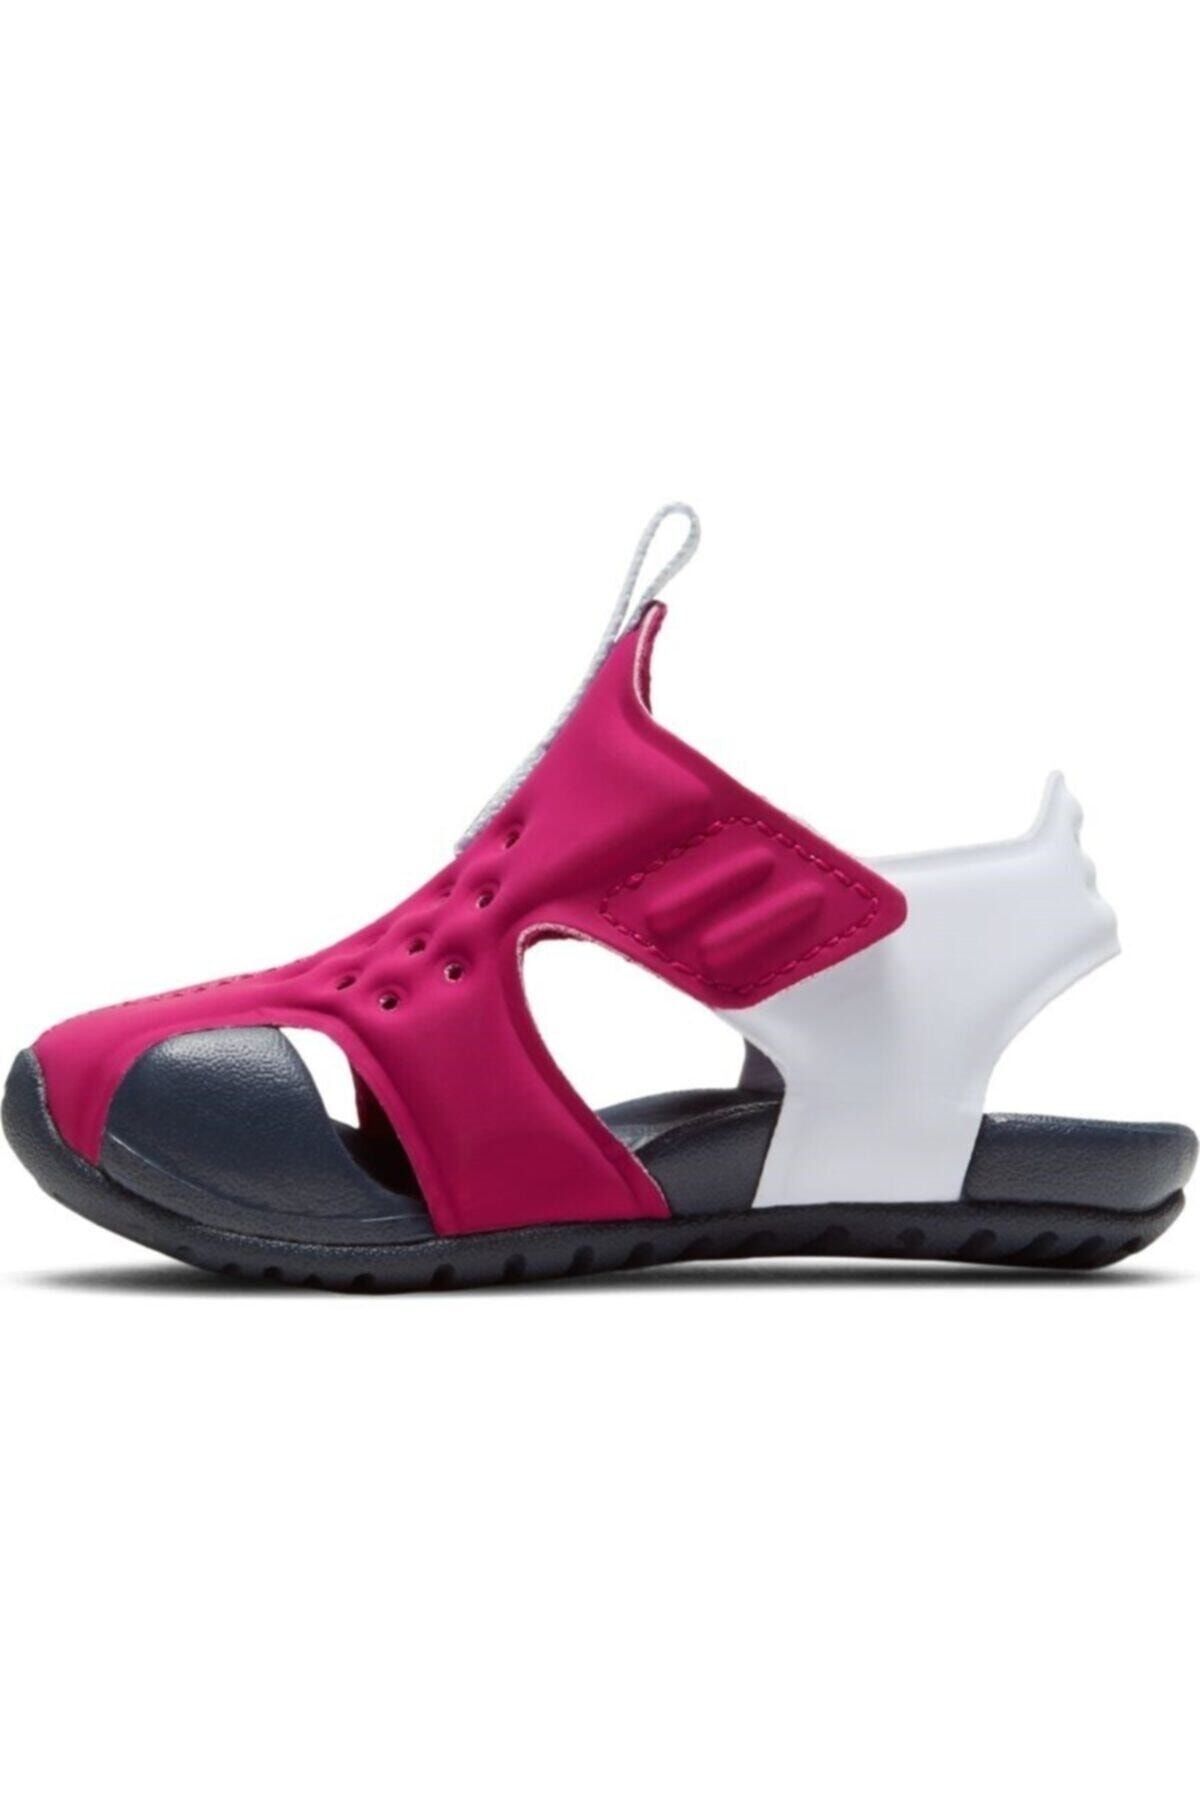 adidas Nike Sunray Protect 2 Sandals Girl 943826604